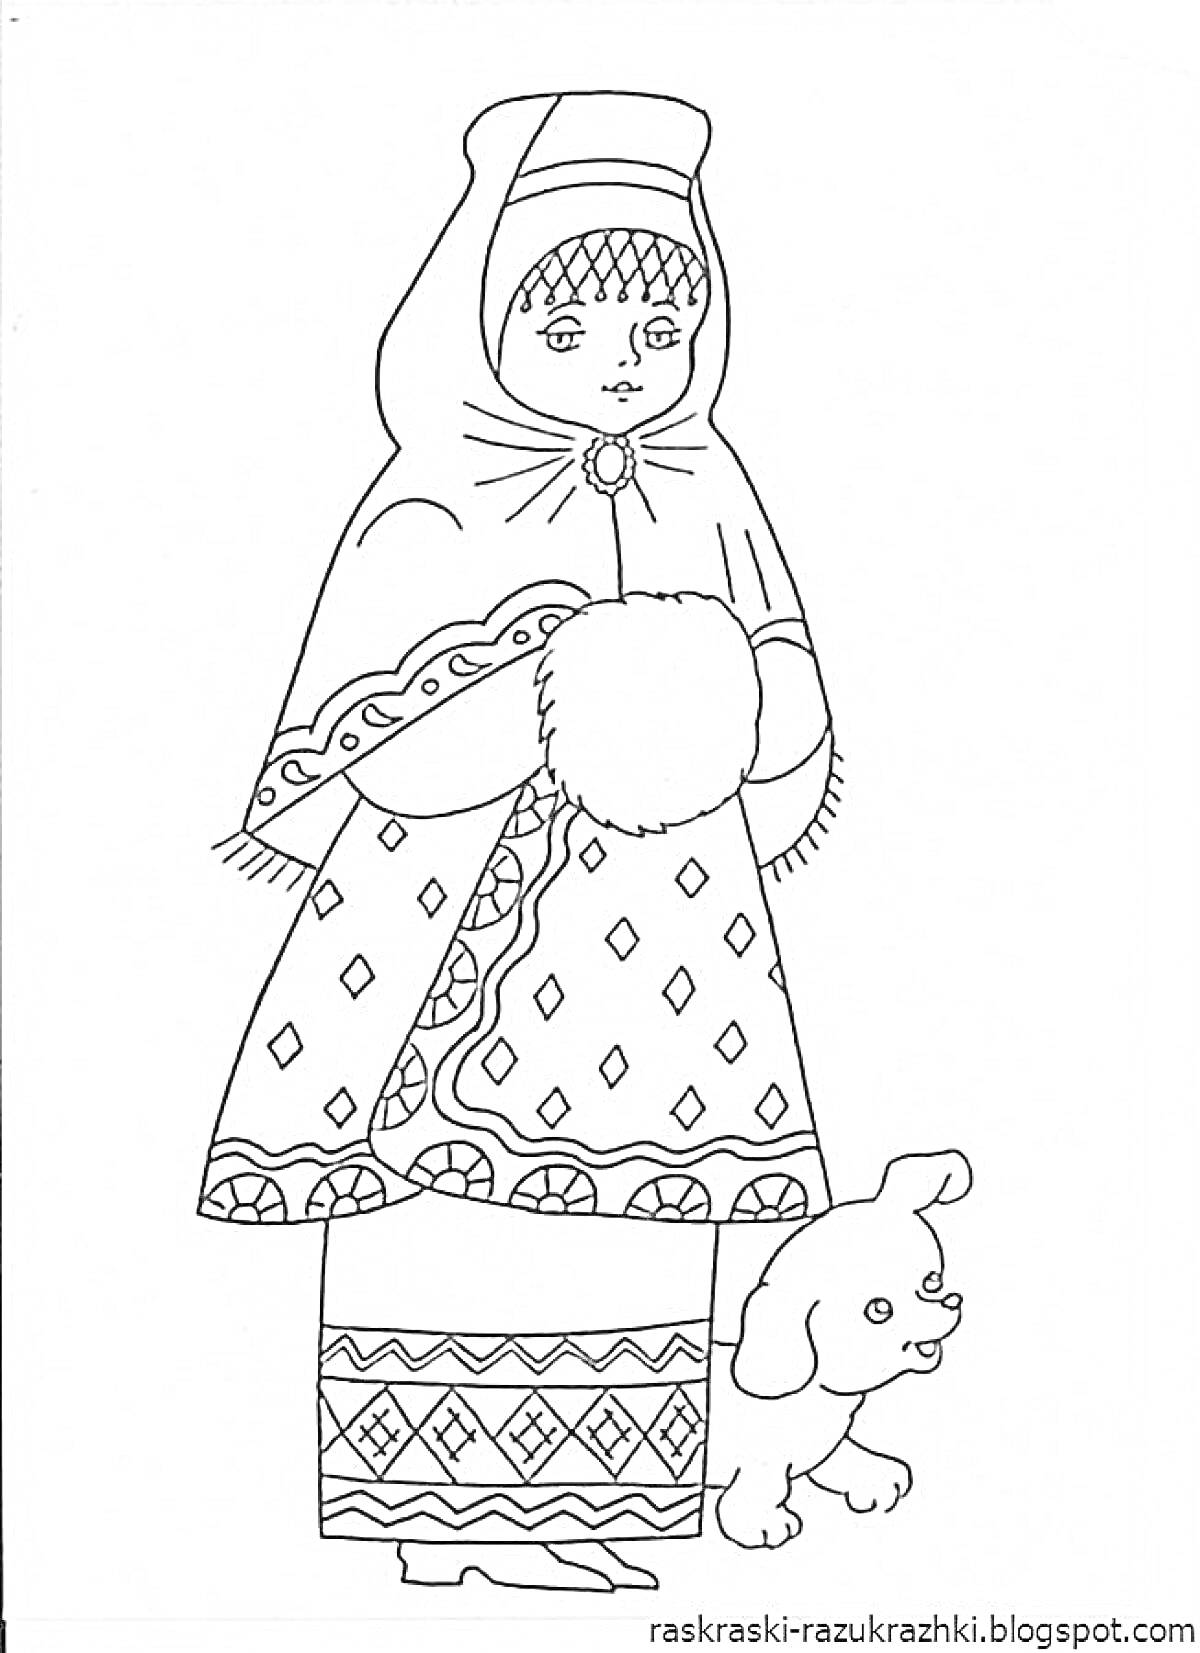 Раскраска Девочка в русском народном костюме с платком на голове, сарафаном, рукавицами и собакой